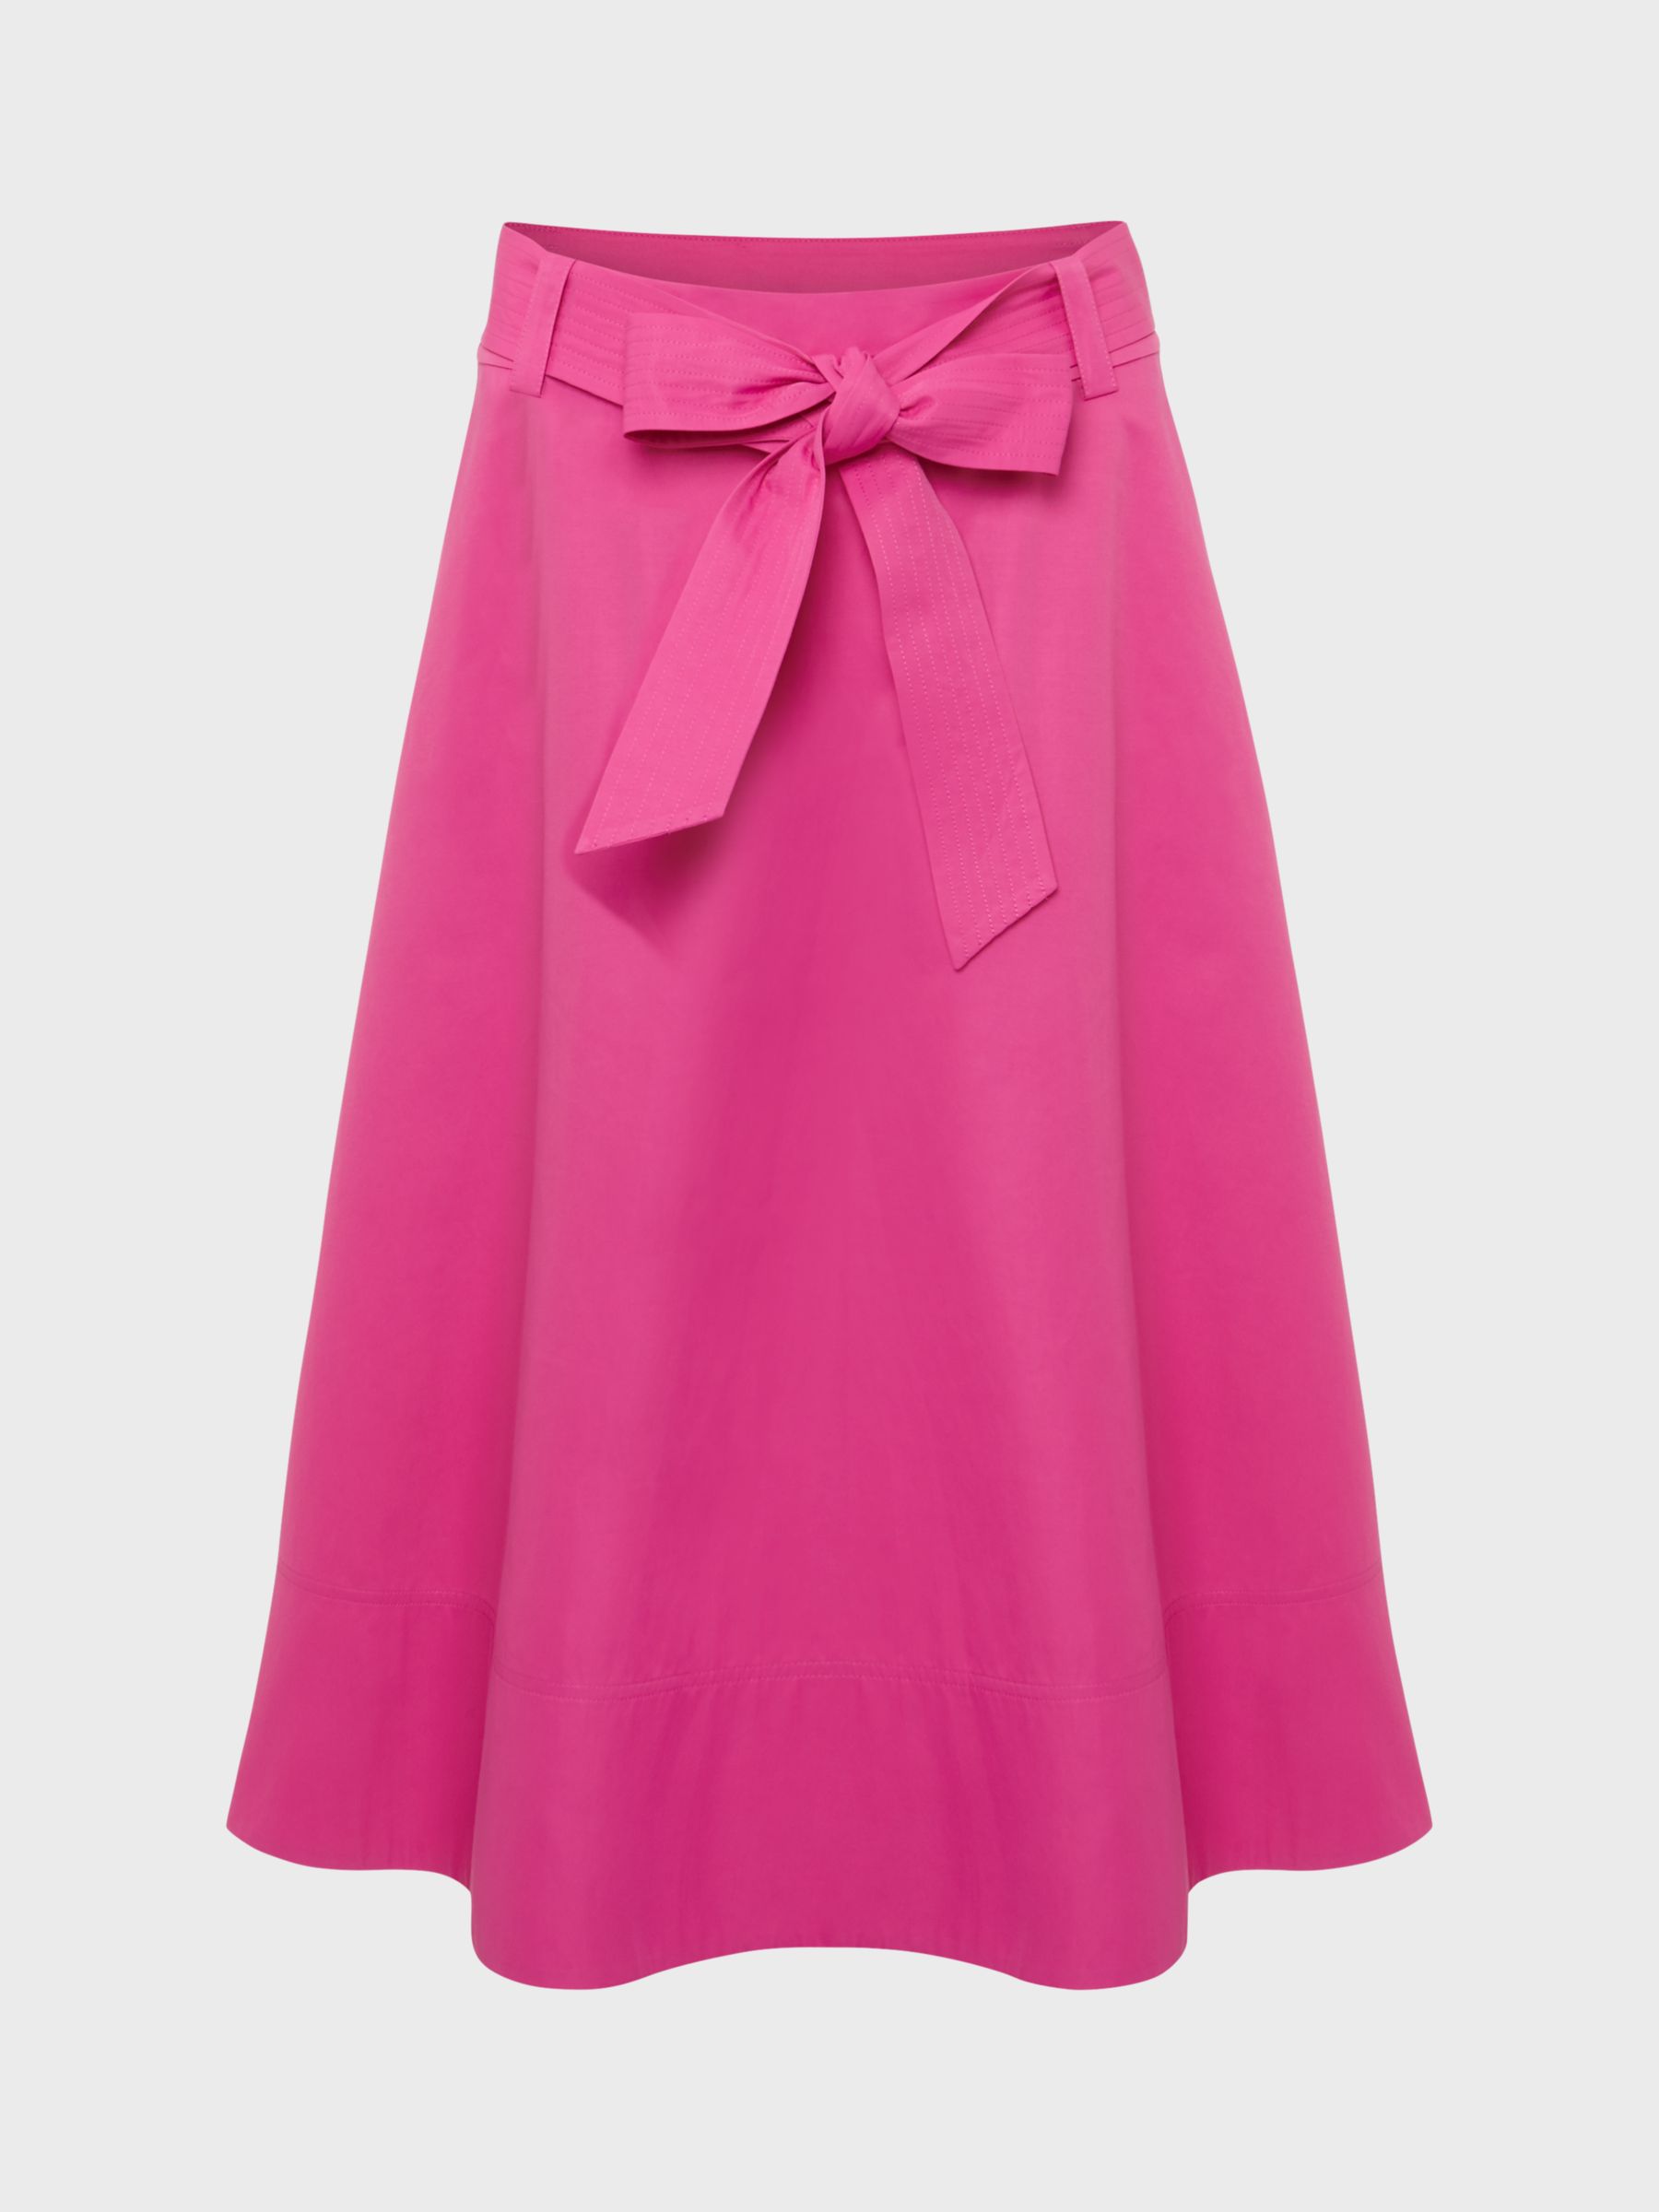 Buy Hobbs Jeanette Belted Skirt, Deep Fuchsia Online at johnlewis.com